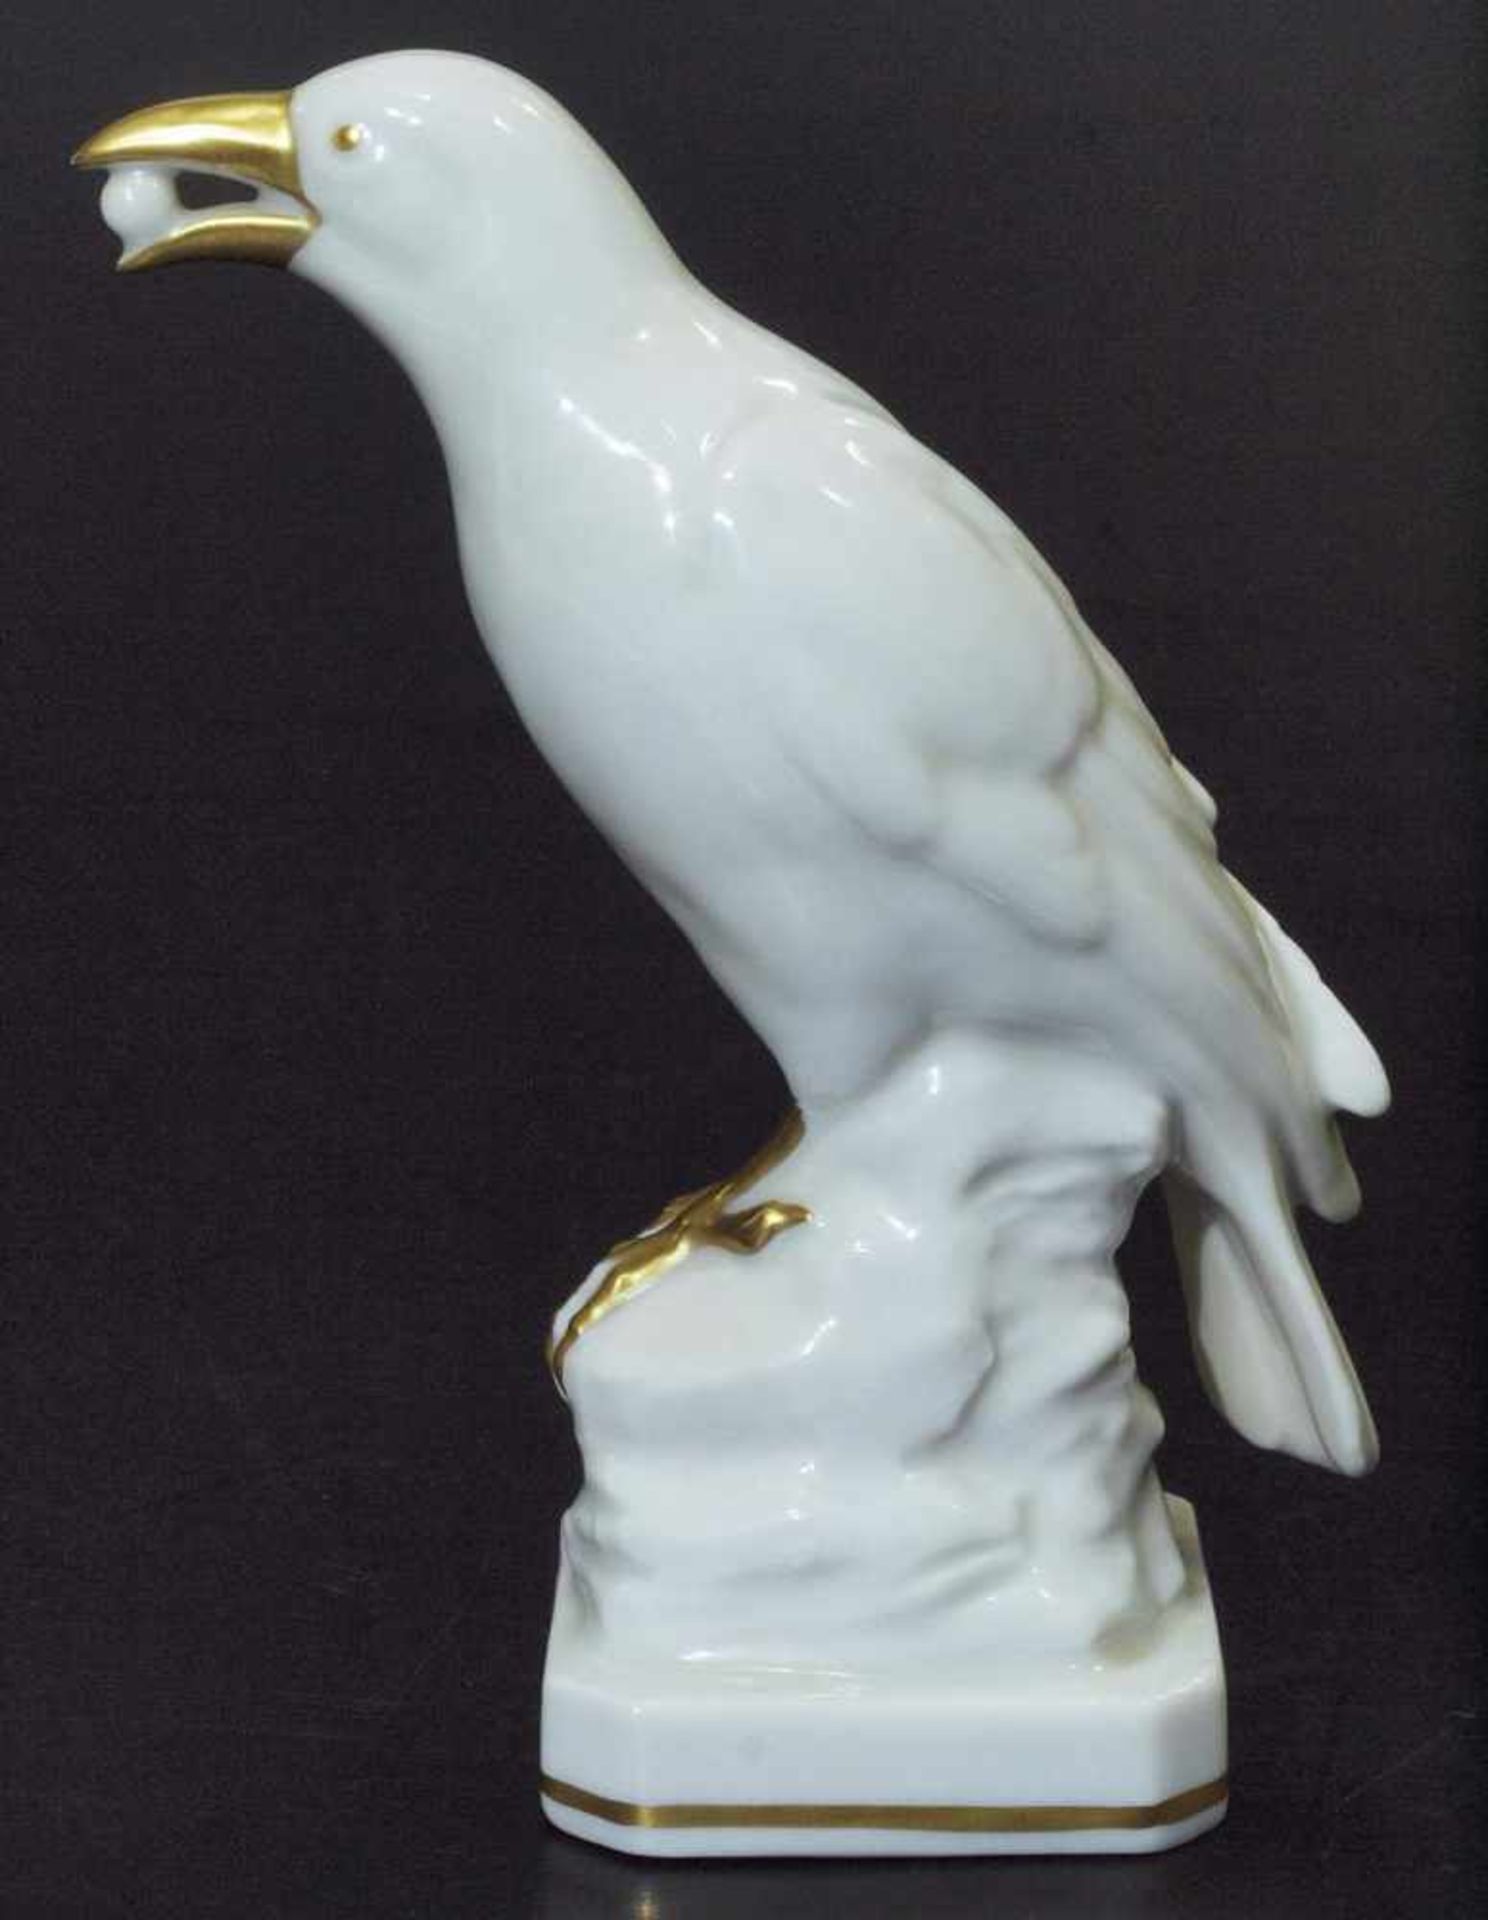 Tierfigur "Vogel".Tierfigur "Vogel". ENS/Rudolstadt, Thüringen, 20. Jahrhundert. Weißporzellan, - Bild 2 aus 5